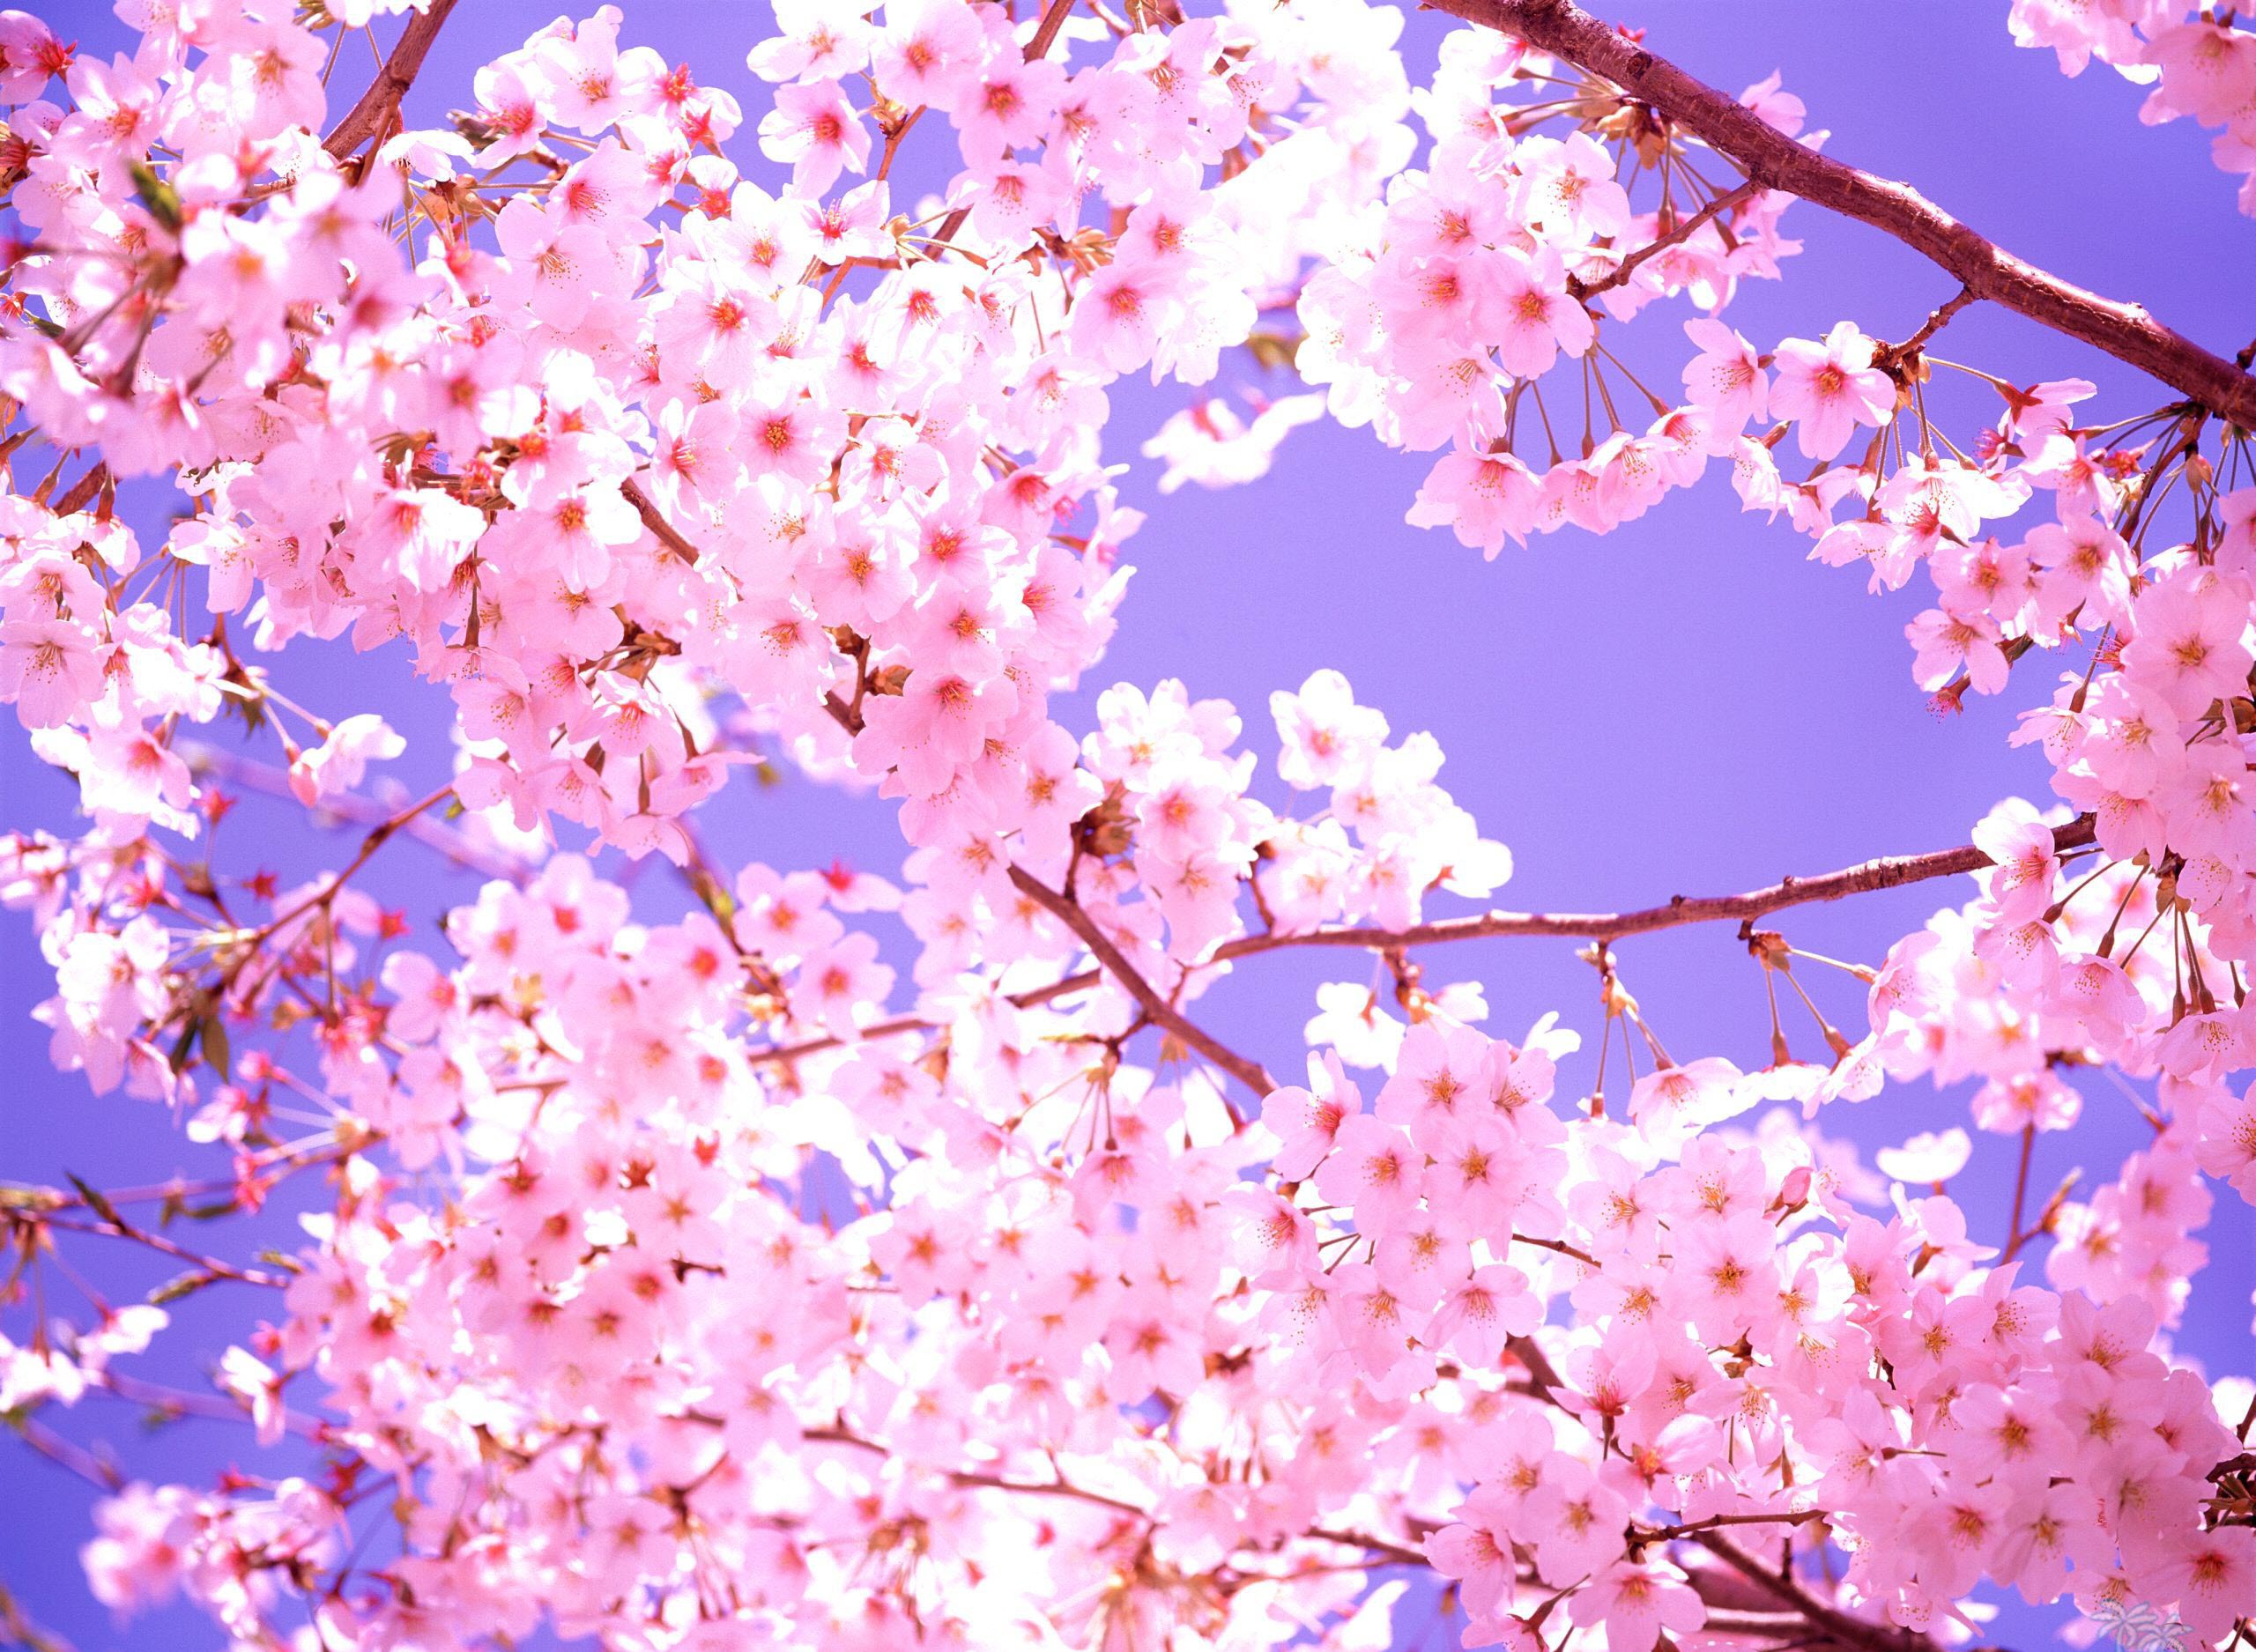 Ngất ngây cùng chùm hình ảnh hoa anh đào Nhật Bản tuyệt đẹp